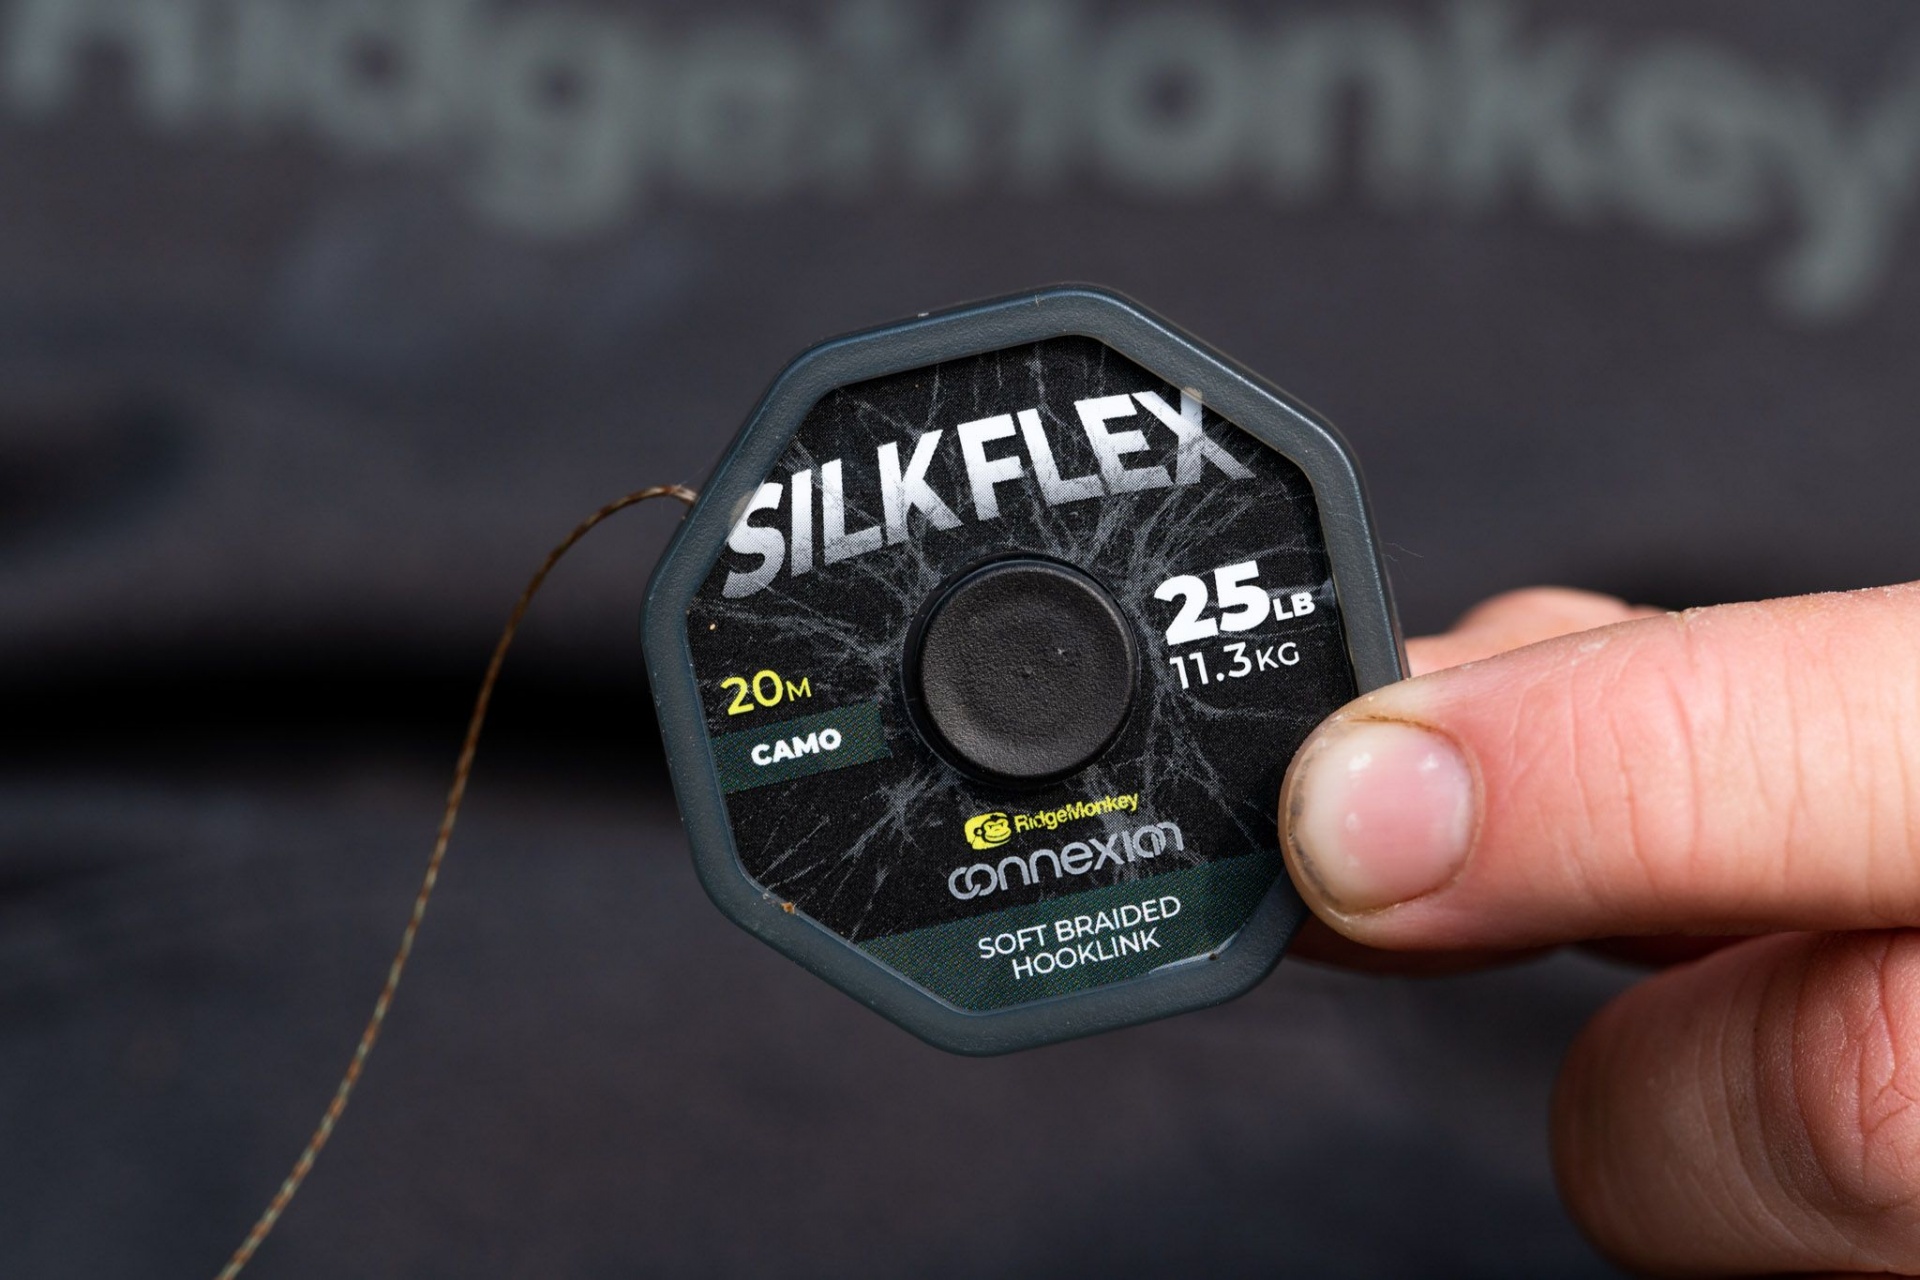 RidgeMonkey Connexion SilkFlex Soft Braid 25lb